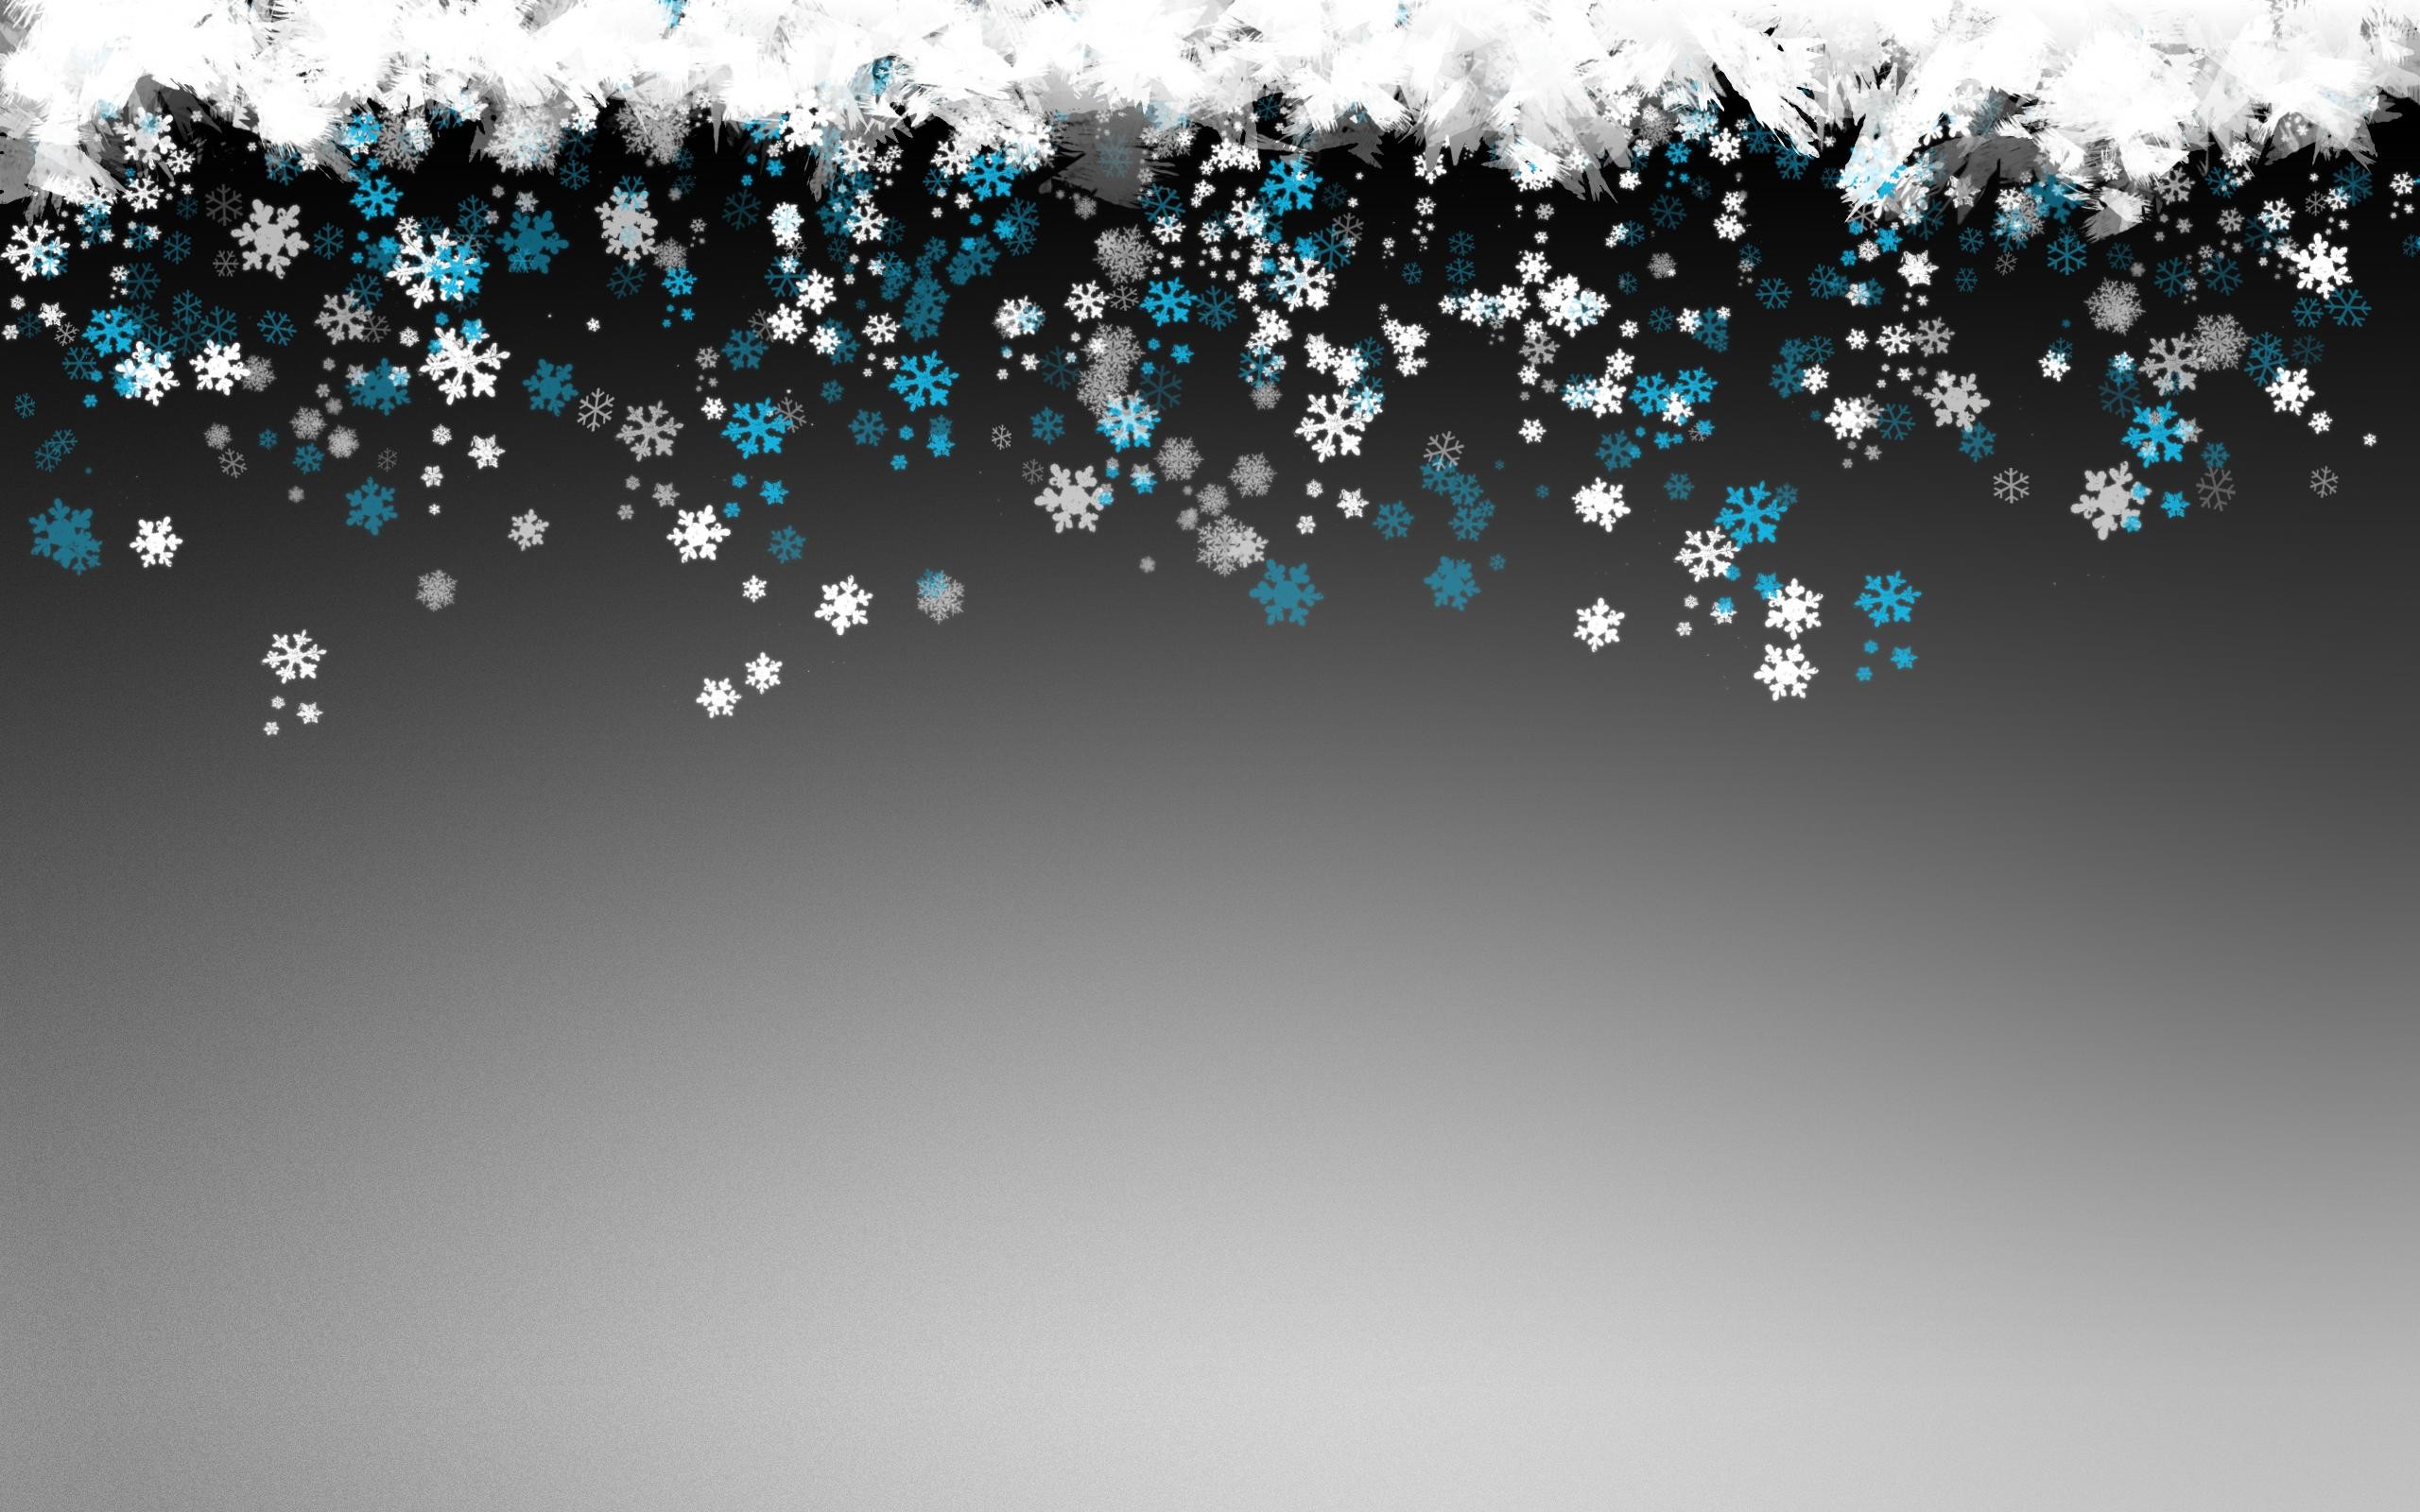 2560x1600 10.02.15: Snowflakes, 